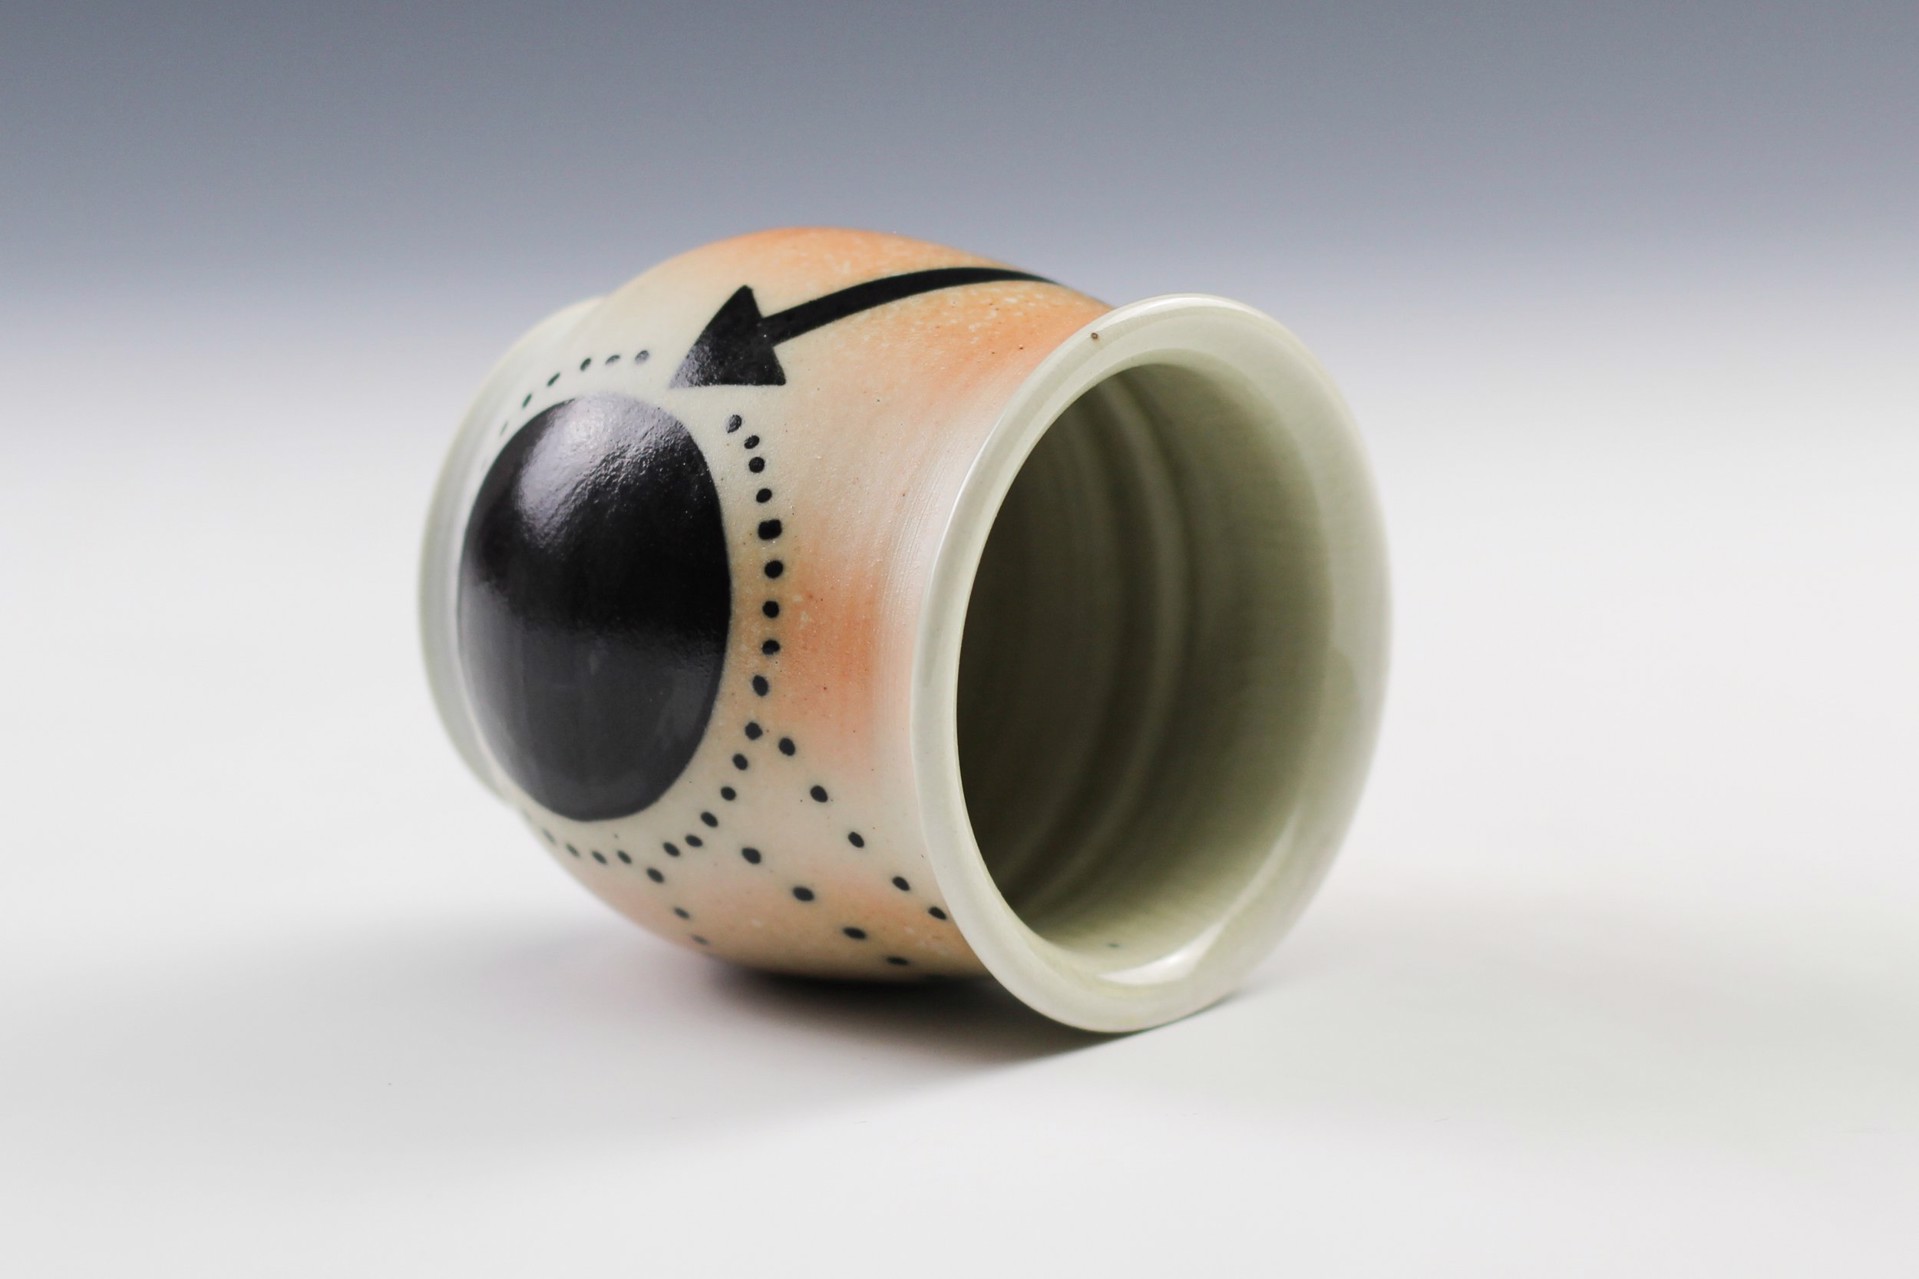 Cup by Joanne Kirkland